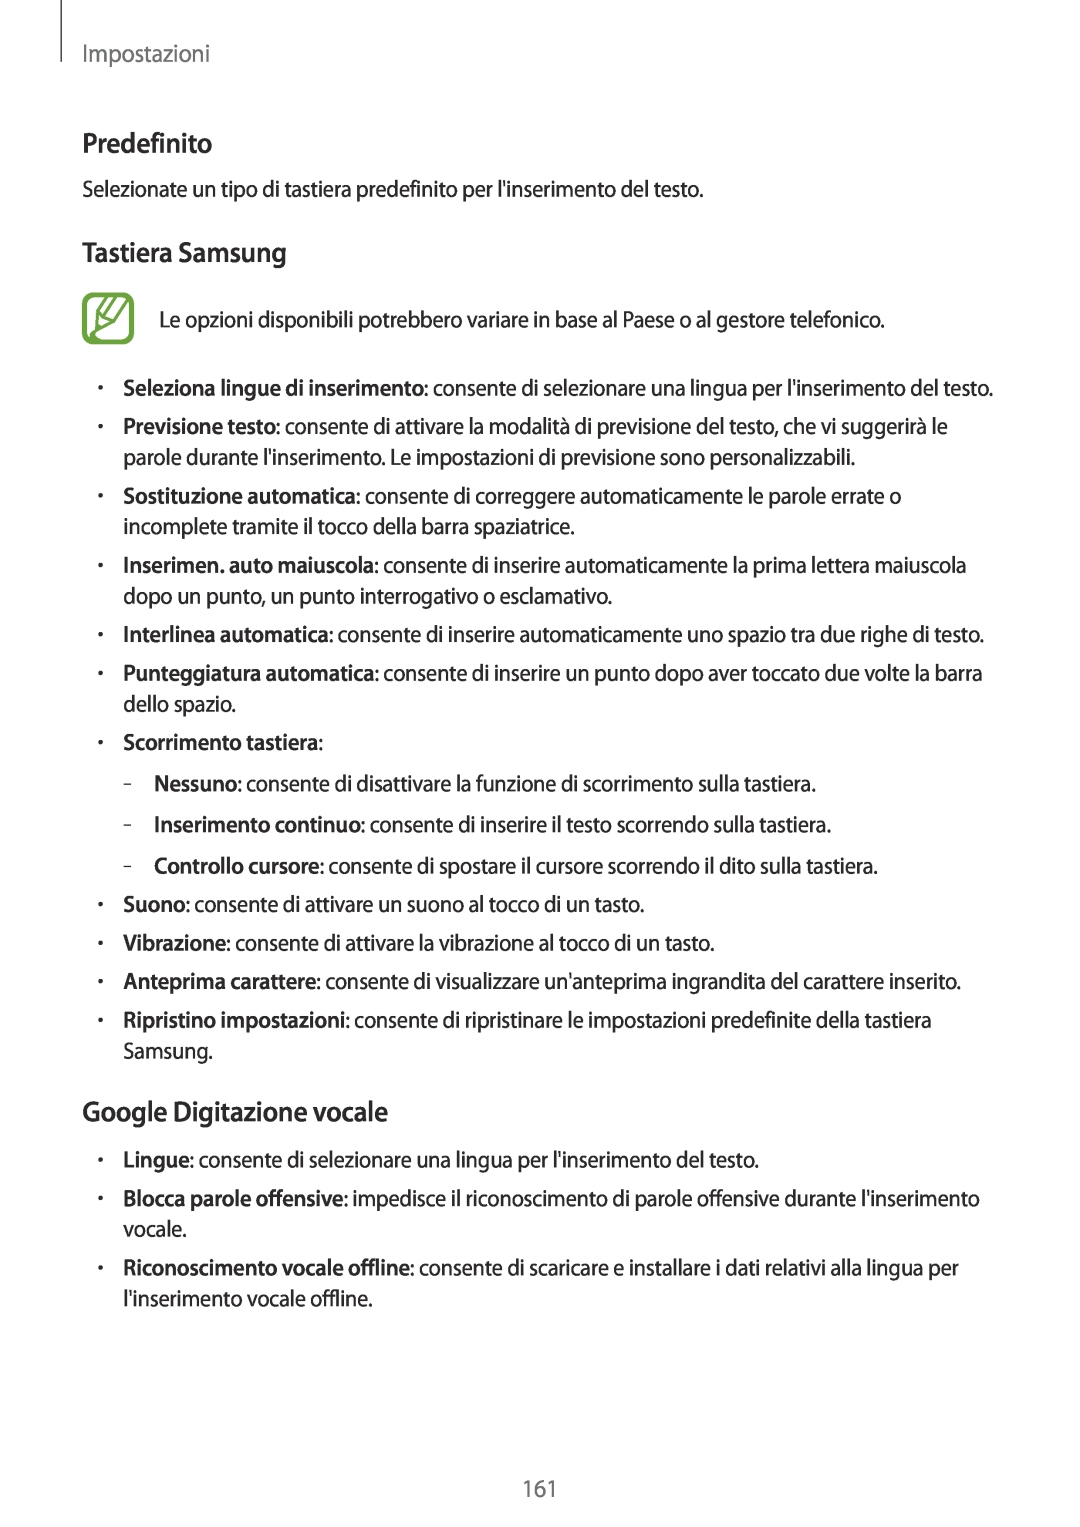 Samsung SM-T700NTSATUR manual Predefinito, Tastiera Samsung, Google Digitazione vocale, Scorrimento tastiera, Impostazioni 